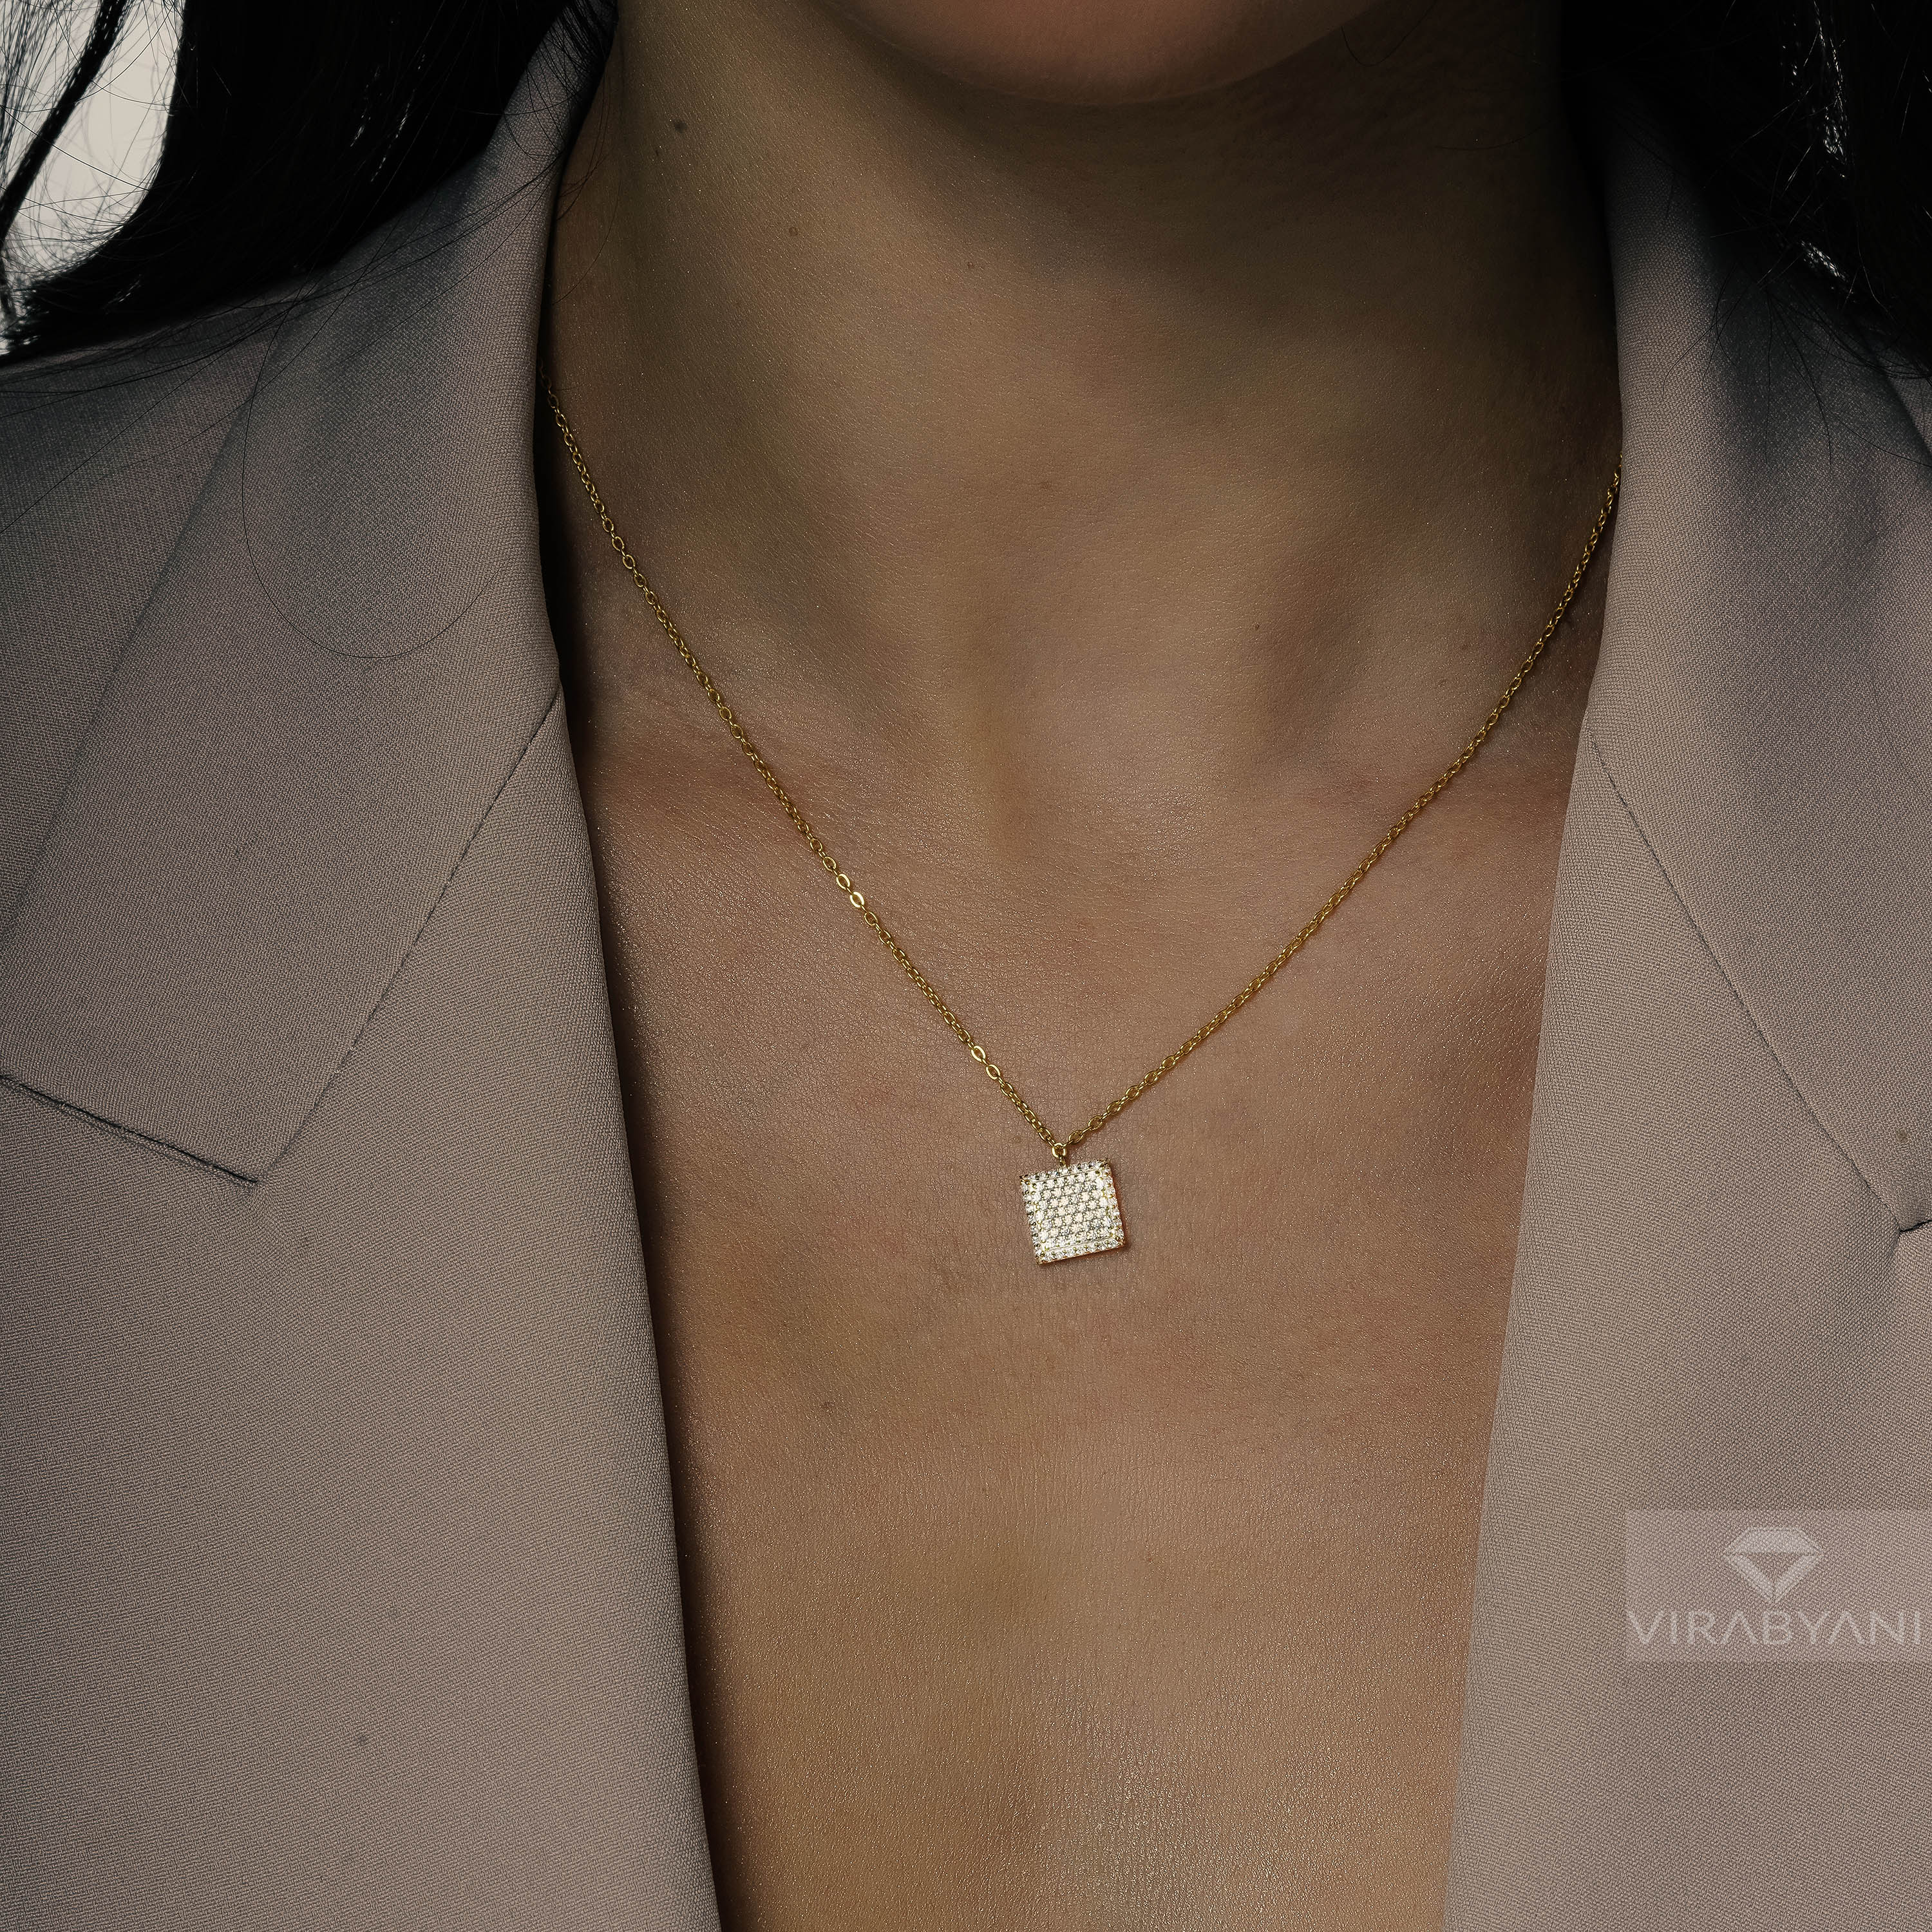 Square Shaped AMoré Pavé Necklace With 0.50 ct. Diamonds